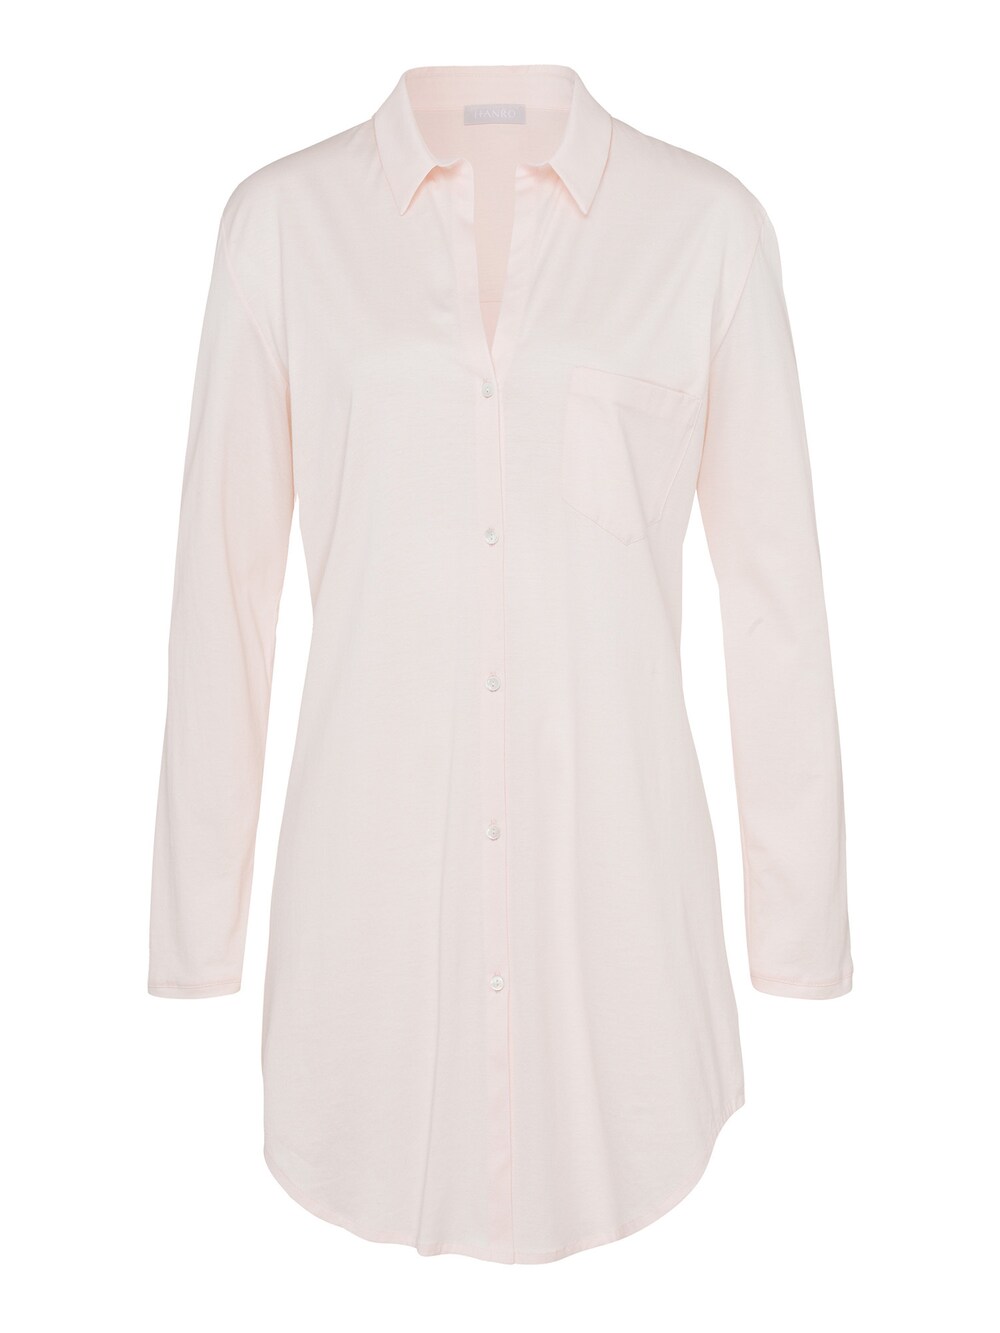 Ночная рубашка Hanro Cotton Deluxe 90cm, розовый фото